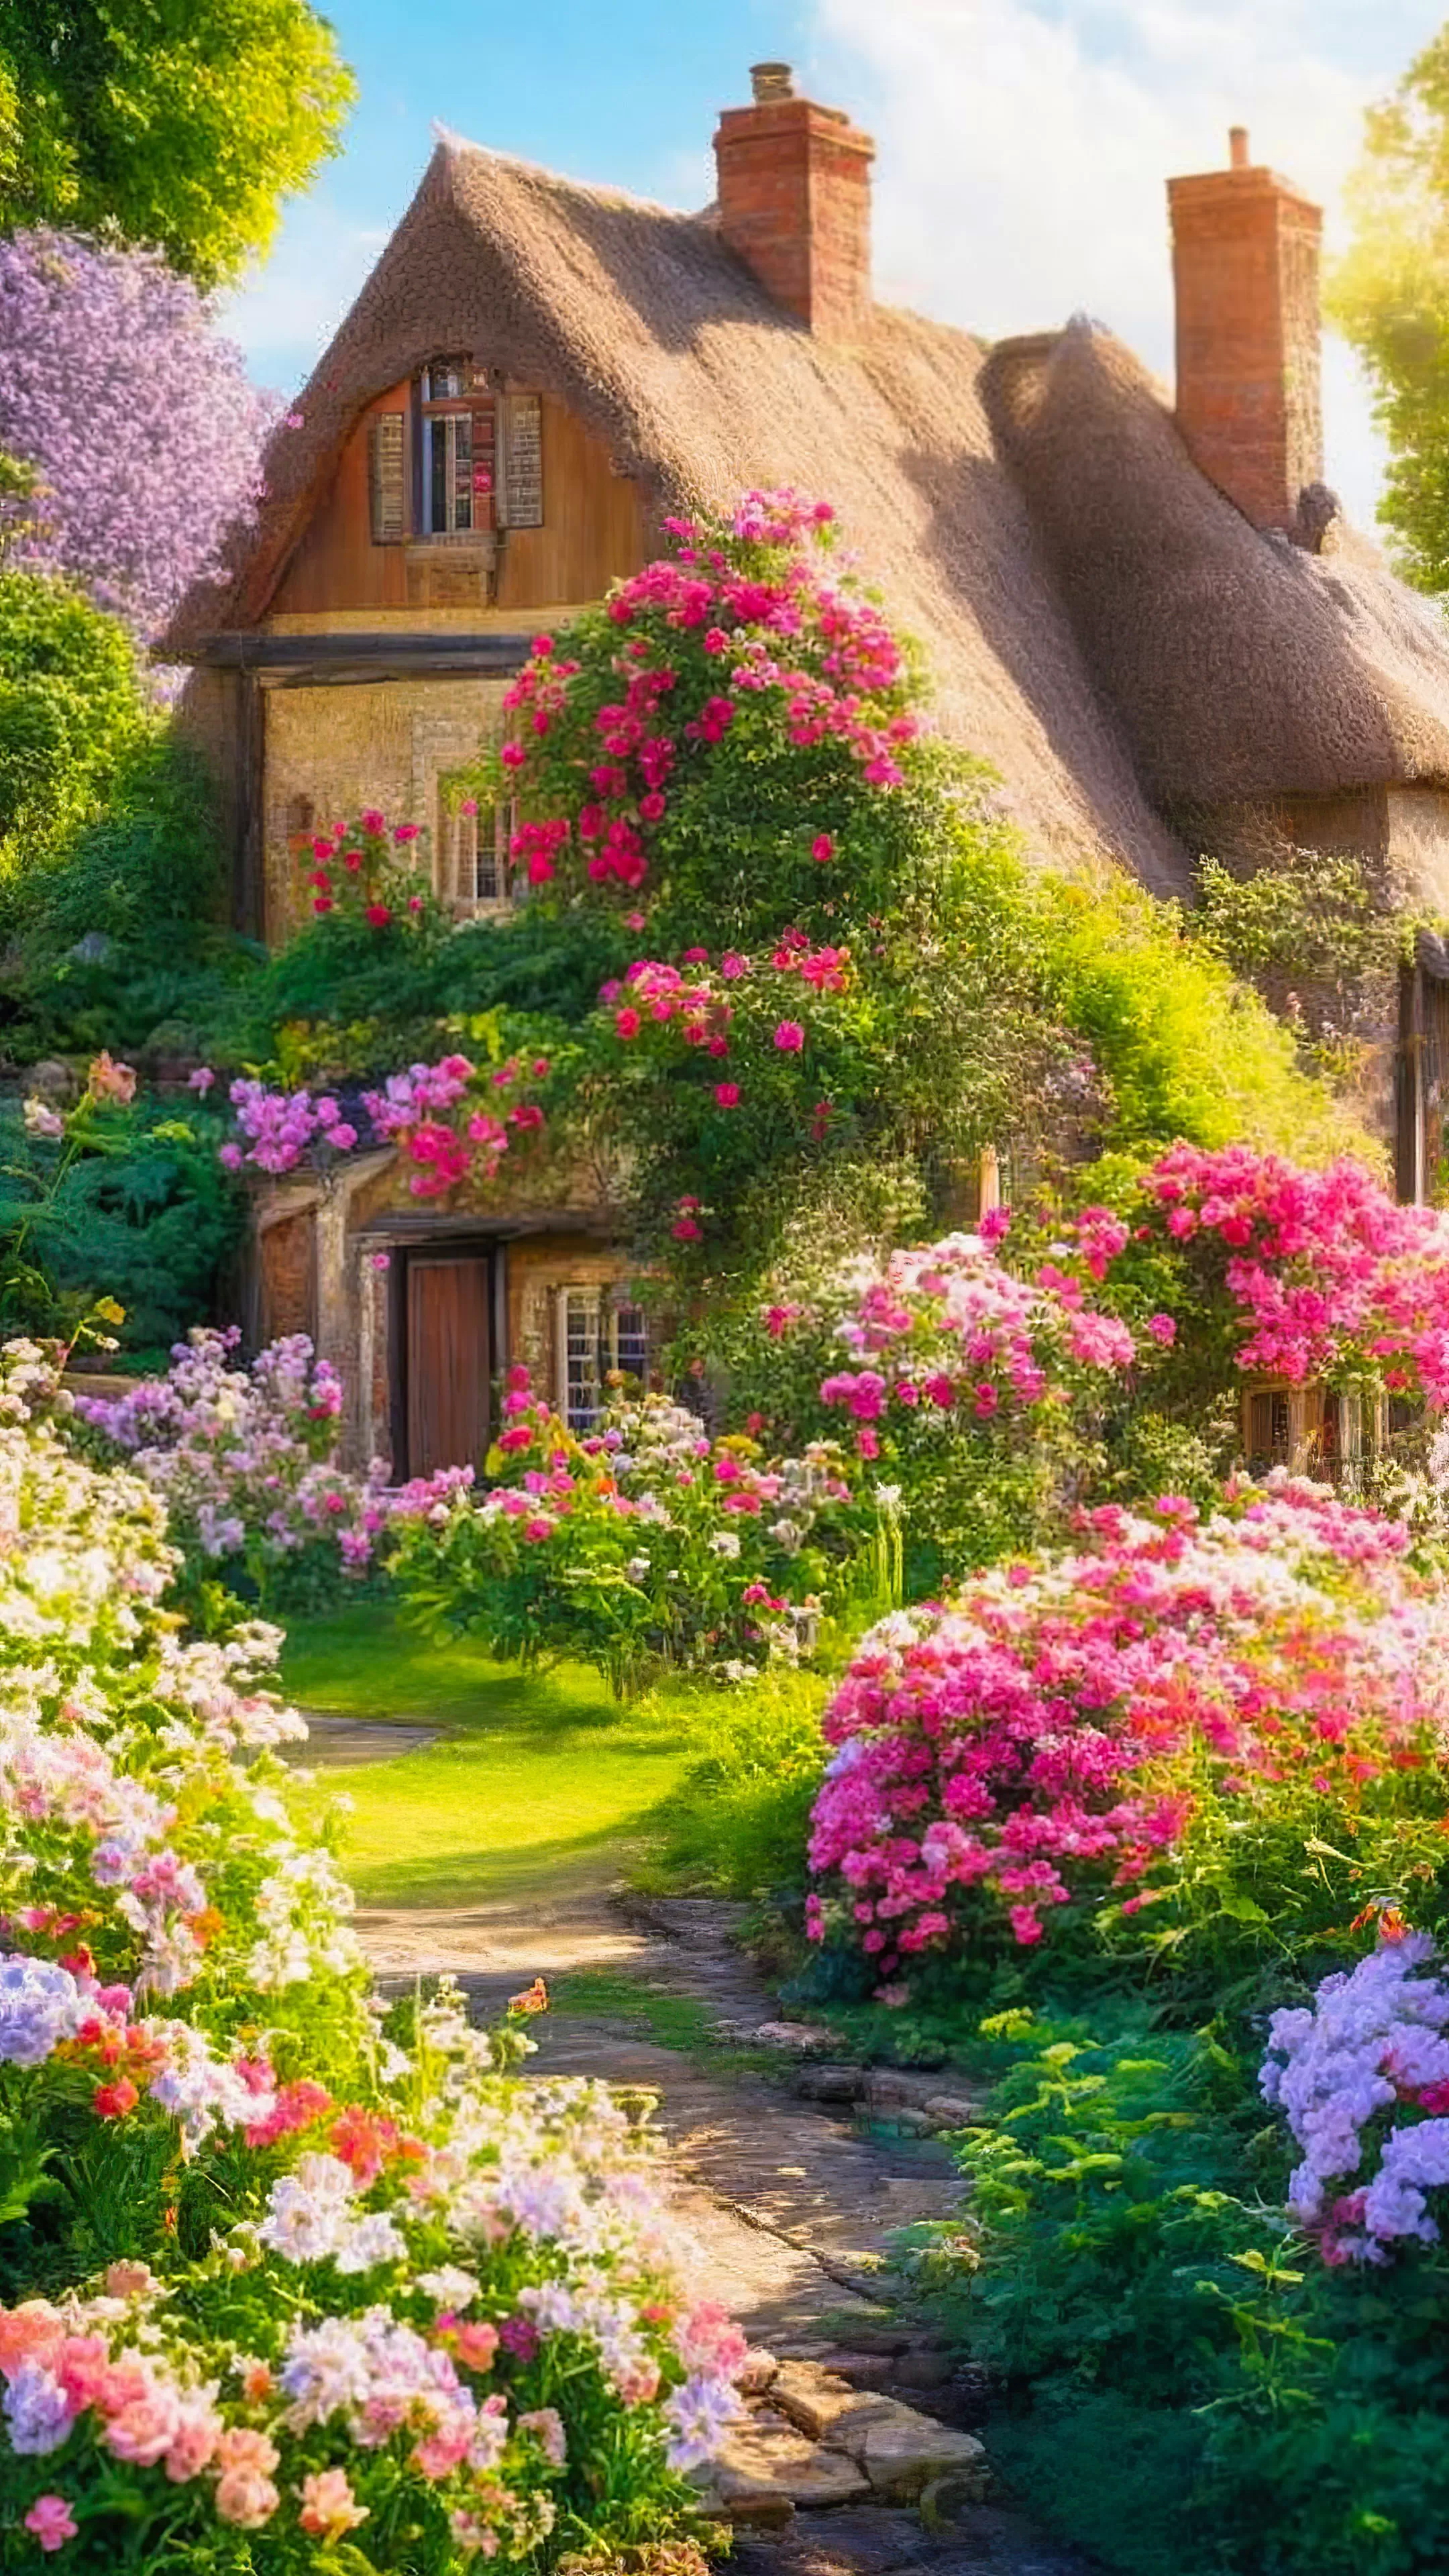 Vivez le charme de notre fond d'écran nature en HD pour votre téléphone, mettant en scène une charmante maison de campagne avec un jardin de fleurs vibrant en une journée ensoleillée, et laissez votre appareil rayonner avec la chaleur d'une journée d'été.